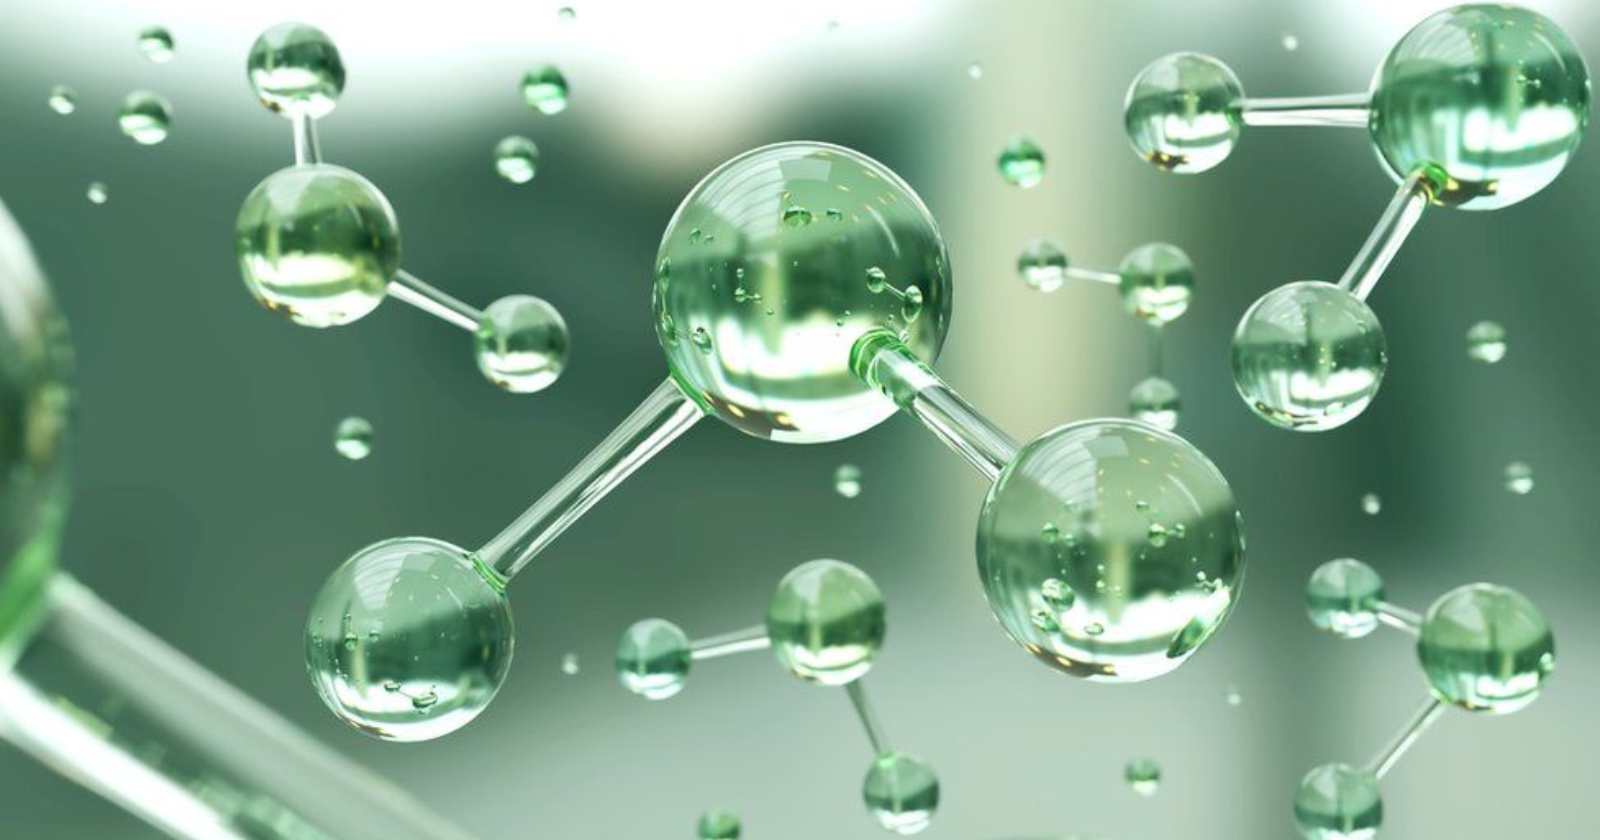 Científico chileno descubre potencial de nanopartículas inteligentes para almacenar hidrógeno verde